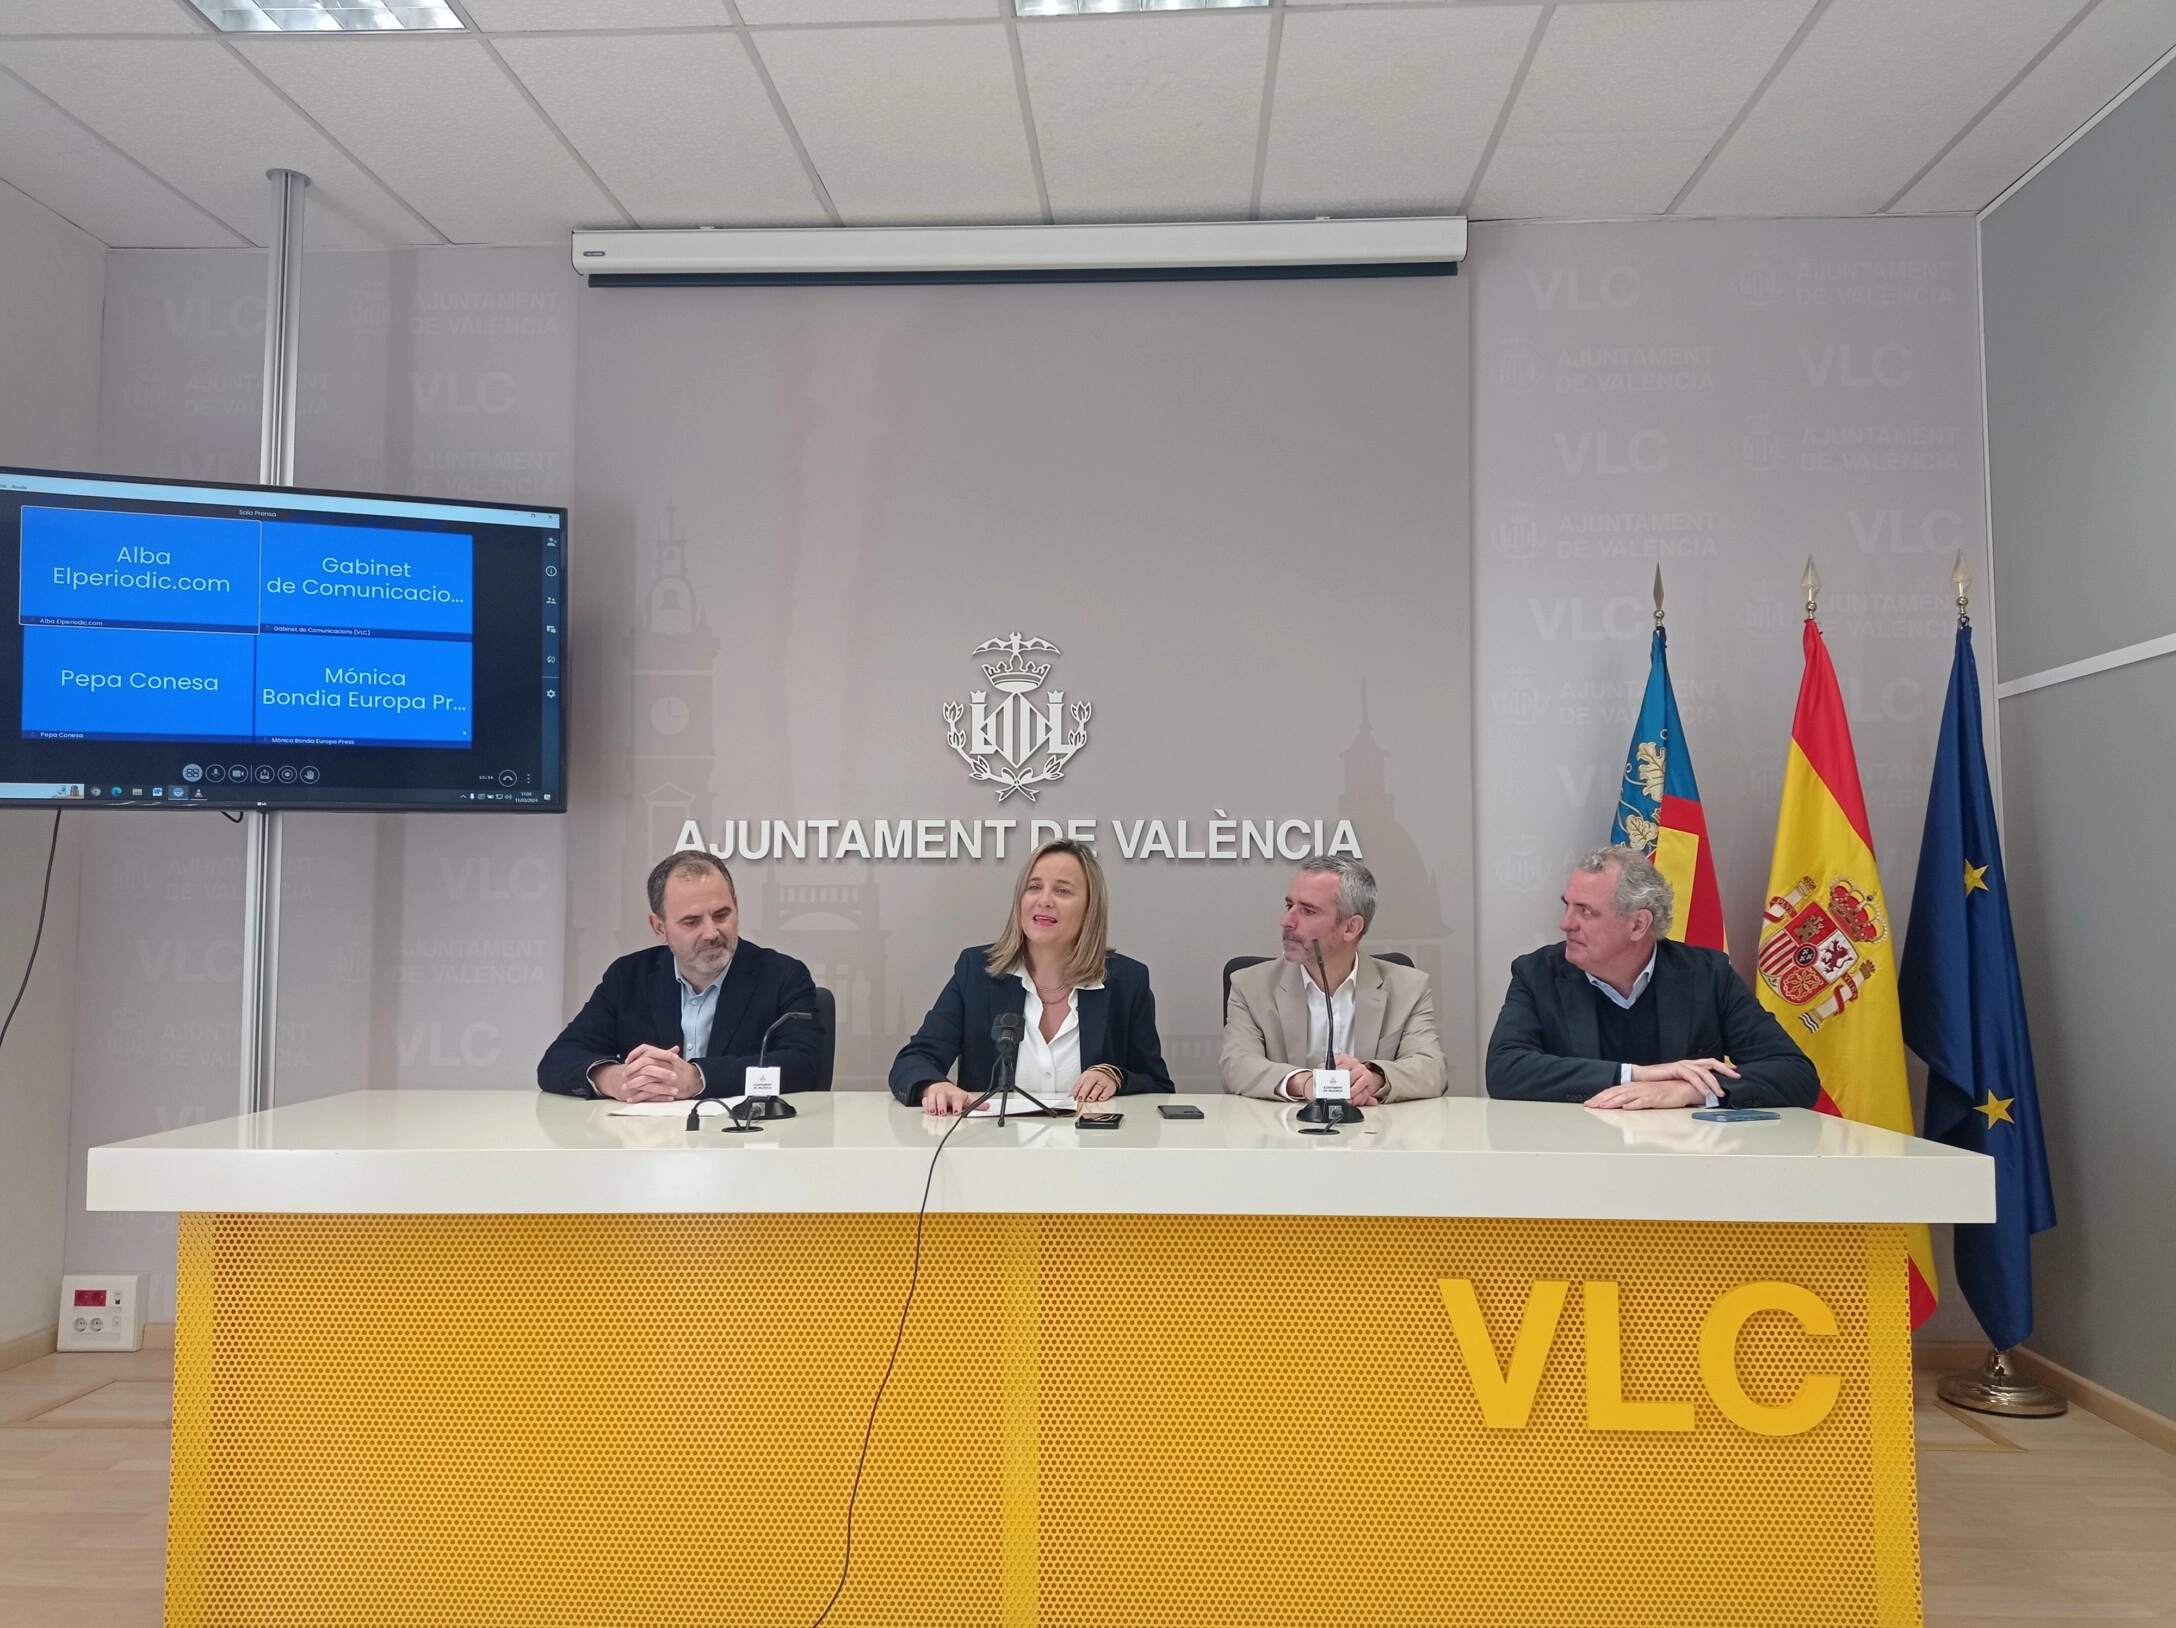 La concejala Paula Llobet presenta, juto a los responsables, el festival de gaming, e-sports, música y tecnología en el Ayuntamiento de Valencia